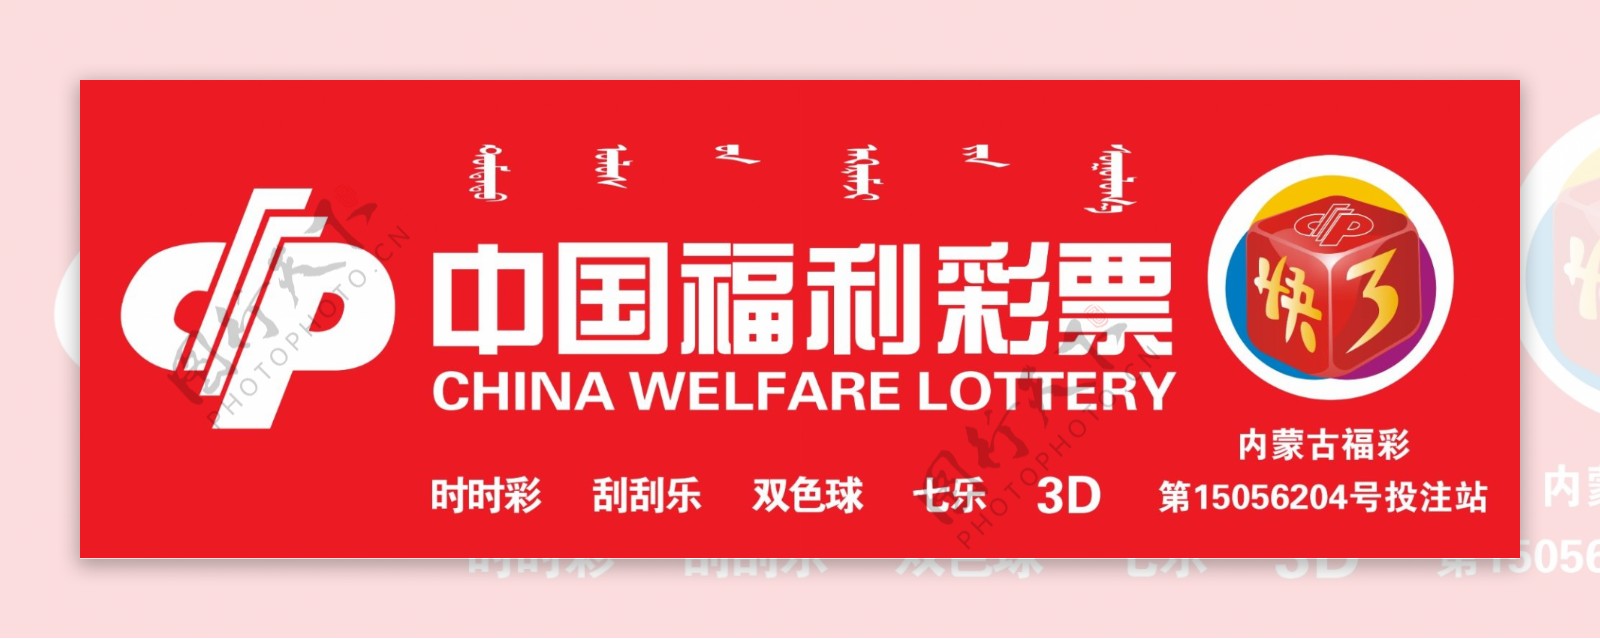 中国福利彩票牌匾图片